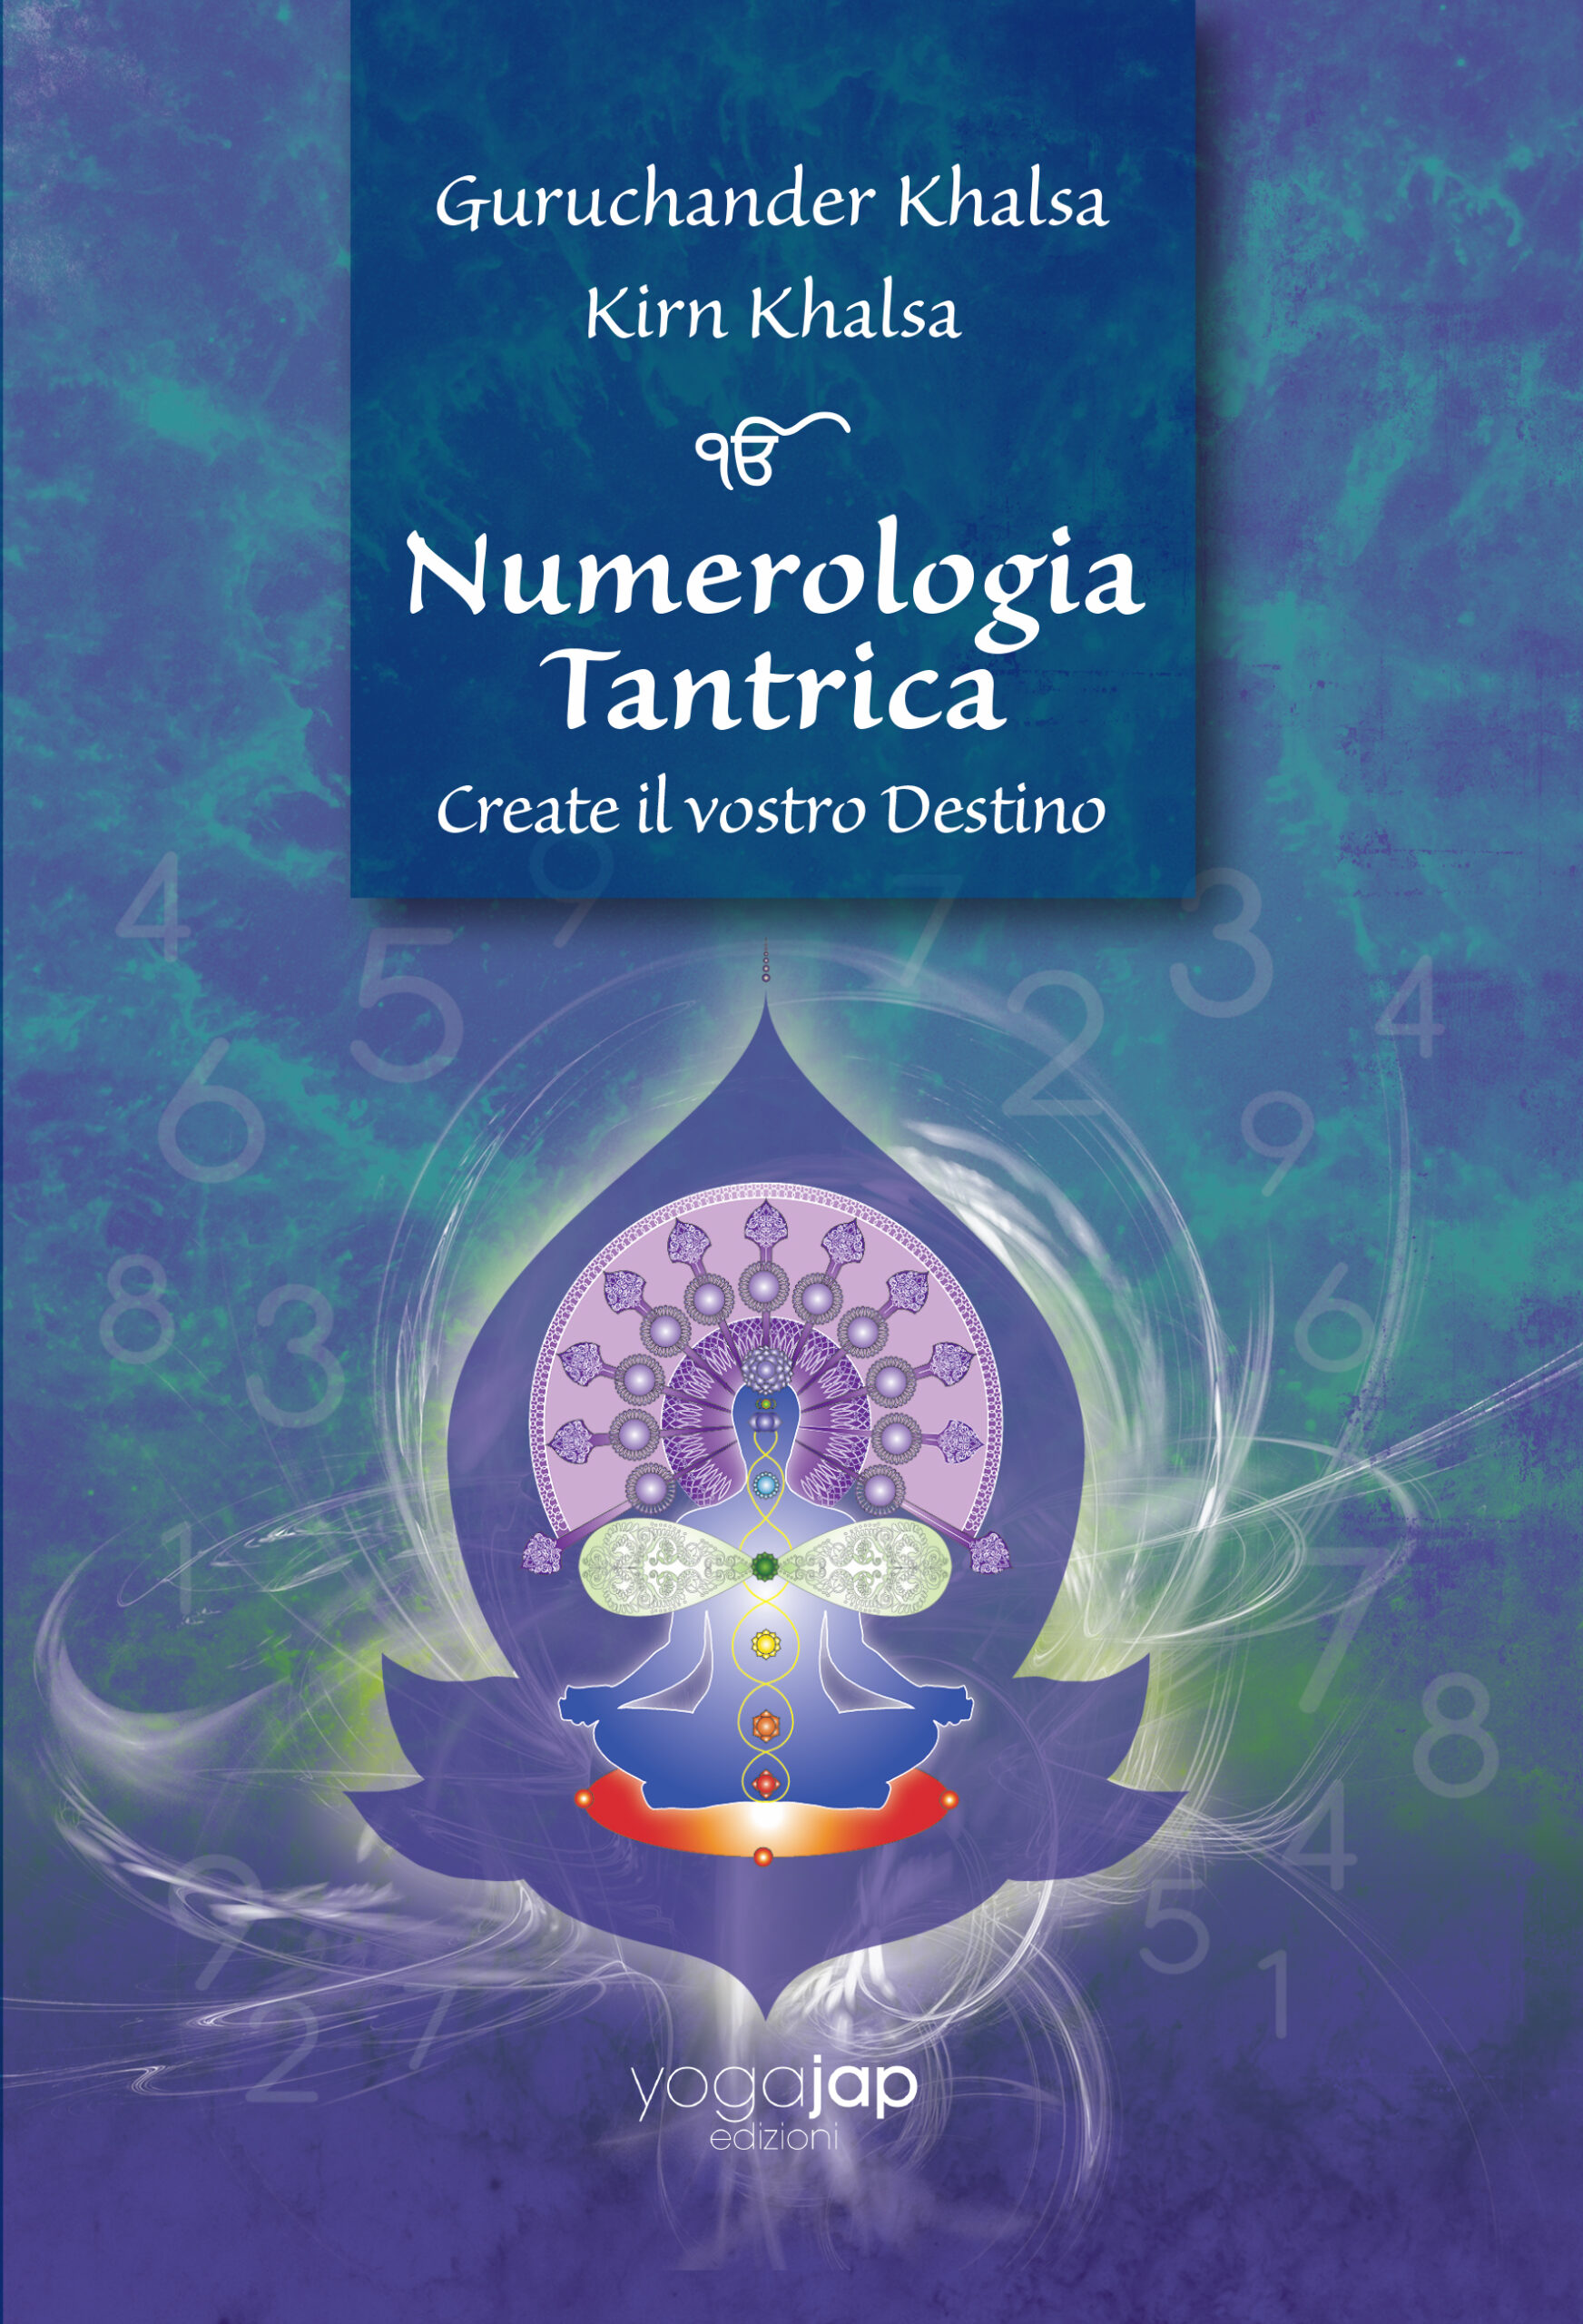 Numerologia Tantrica - Create il vostro Destino